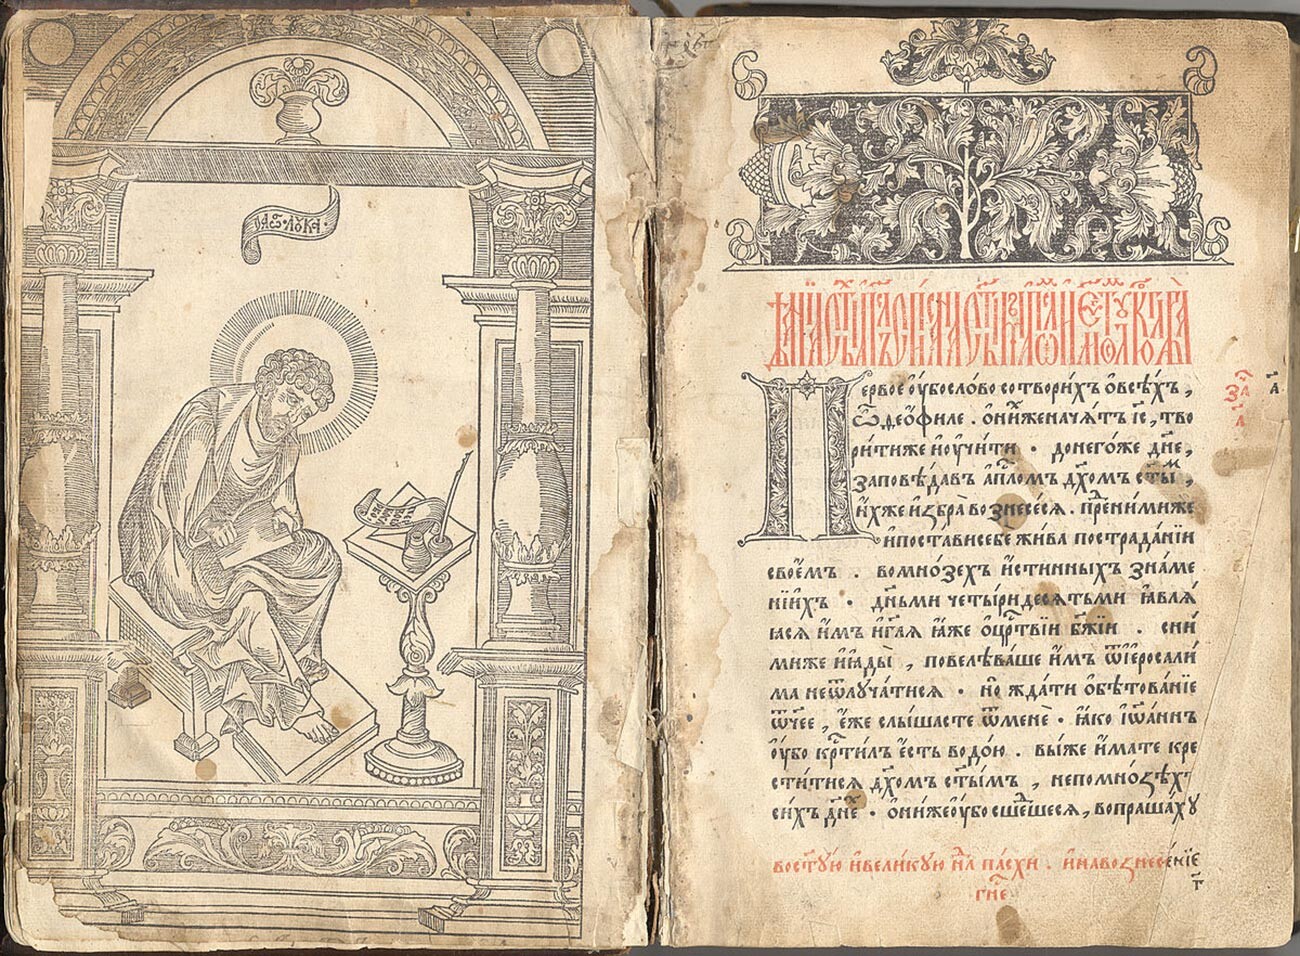 Titelseite des ersten gedruckten russischen Buches Apostolos von 1564.